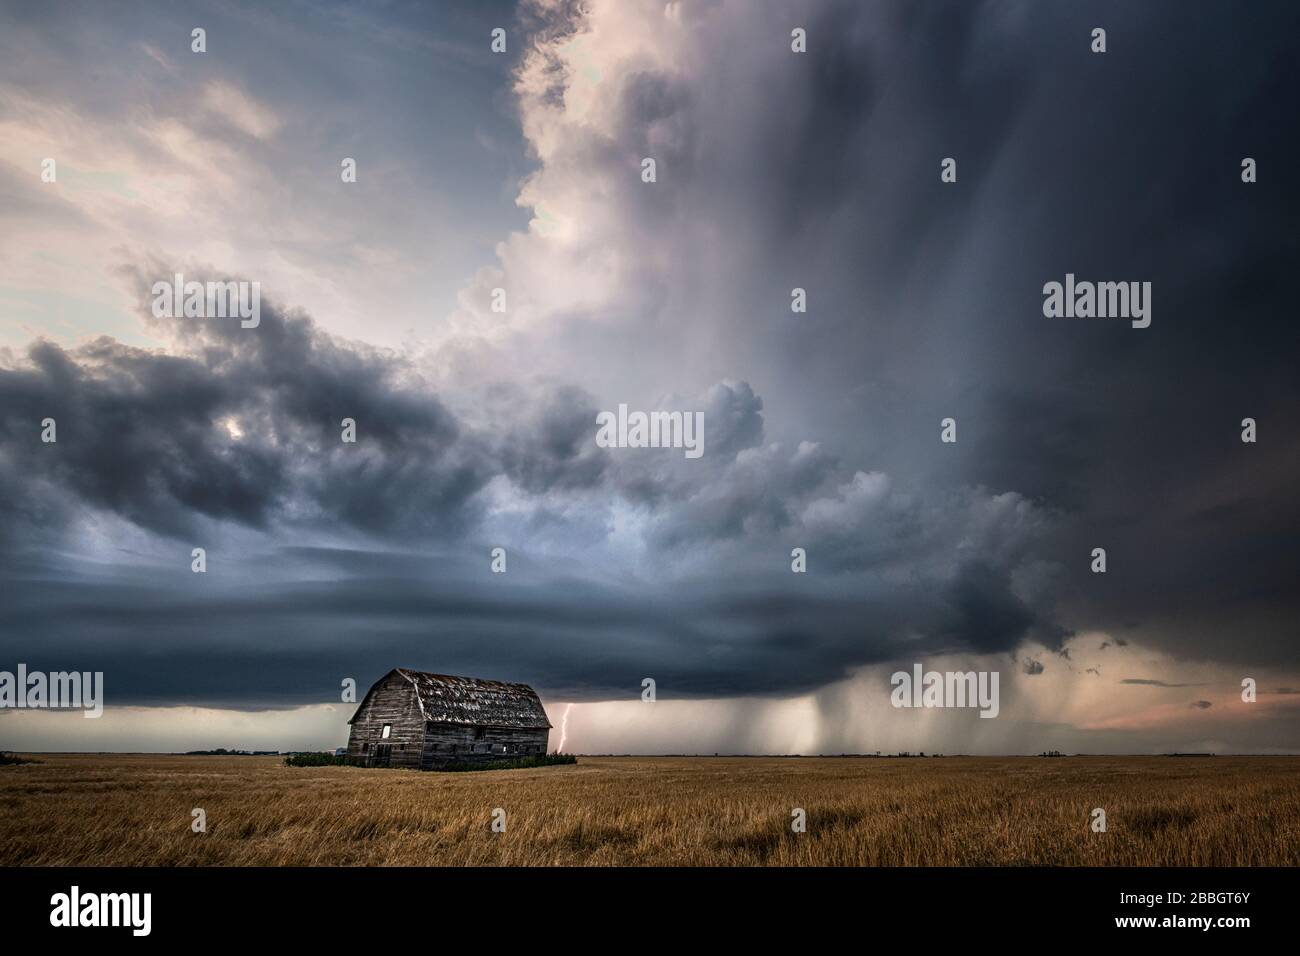 Sturm mit Blitz, Regen und alter verfallener Scheune im ländlichen Süden Manitobas Kanadas Stockfoto